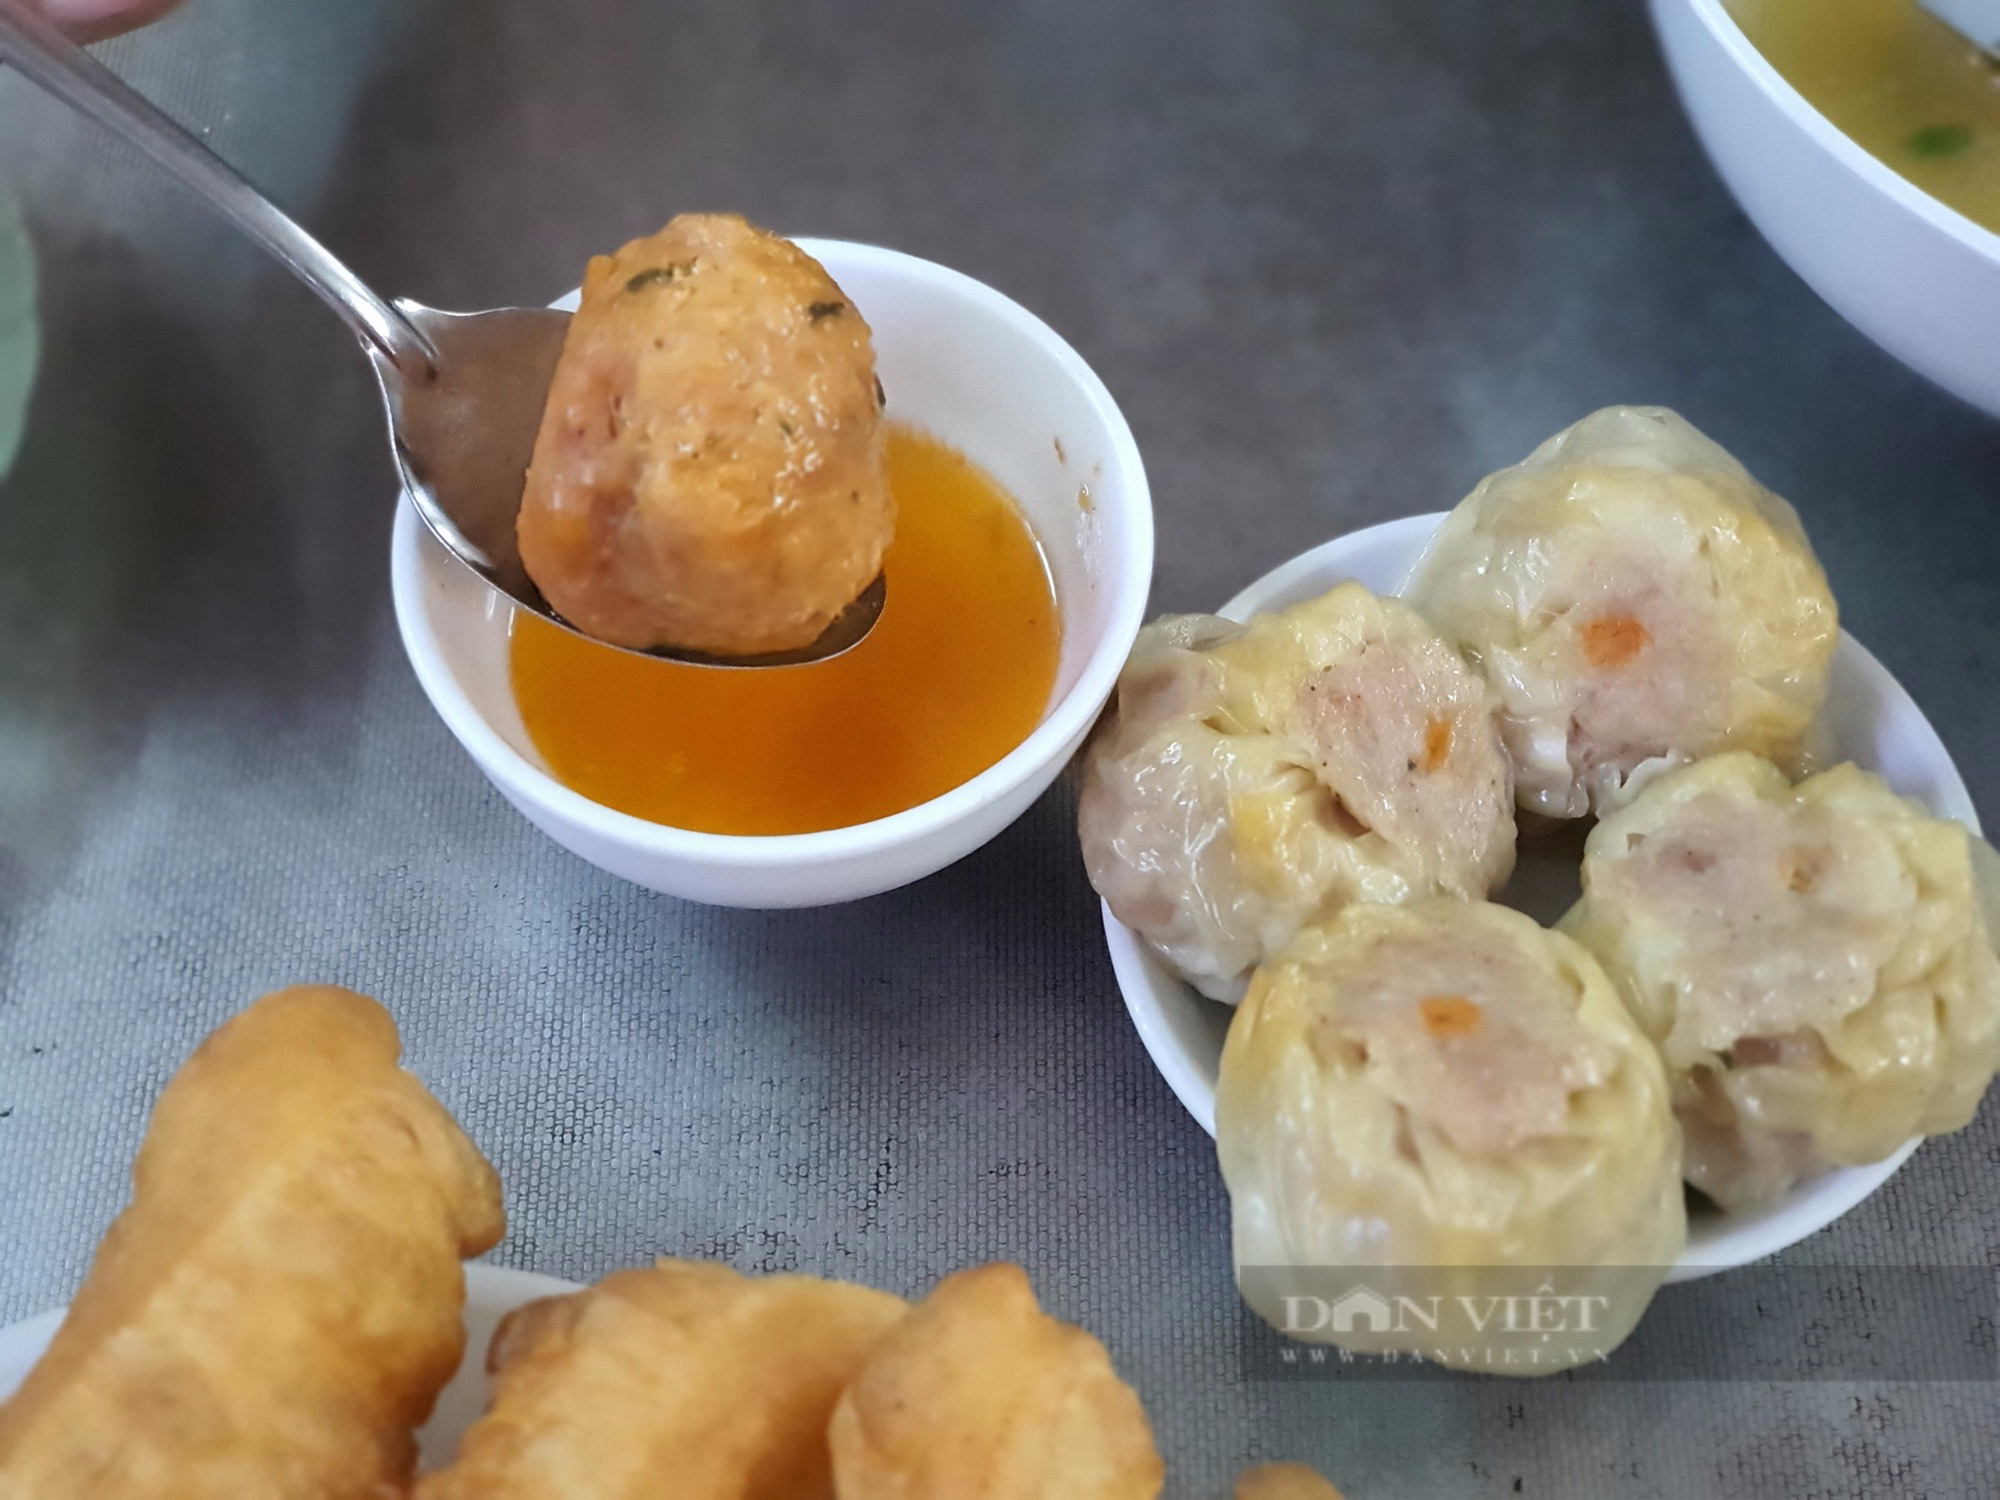 Sài Gòn quán: Quán ăn chính gốc người Hoa ở quận 3, khách hết hồn vì cả chục món dimsum bày trên bàn - Ảnh 1.